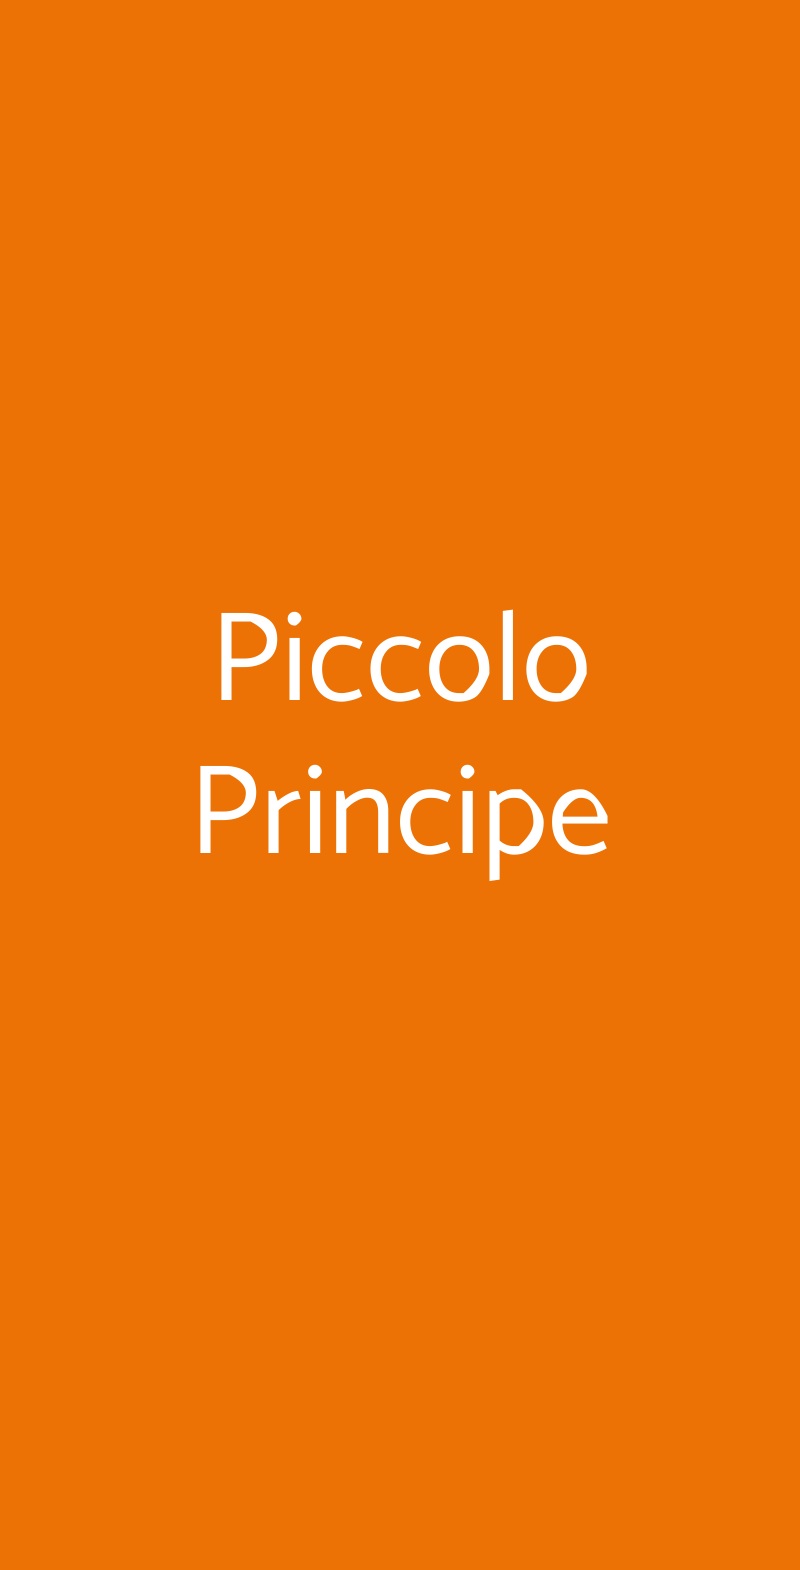 Piccolo Principe Milano menù 1 pagina